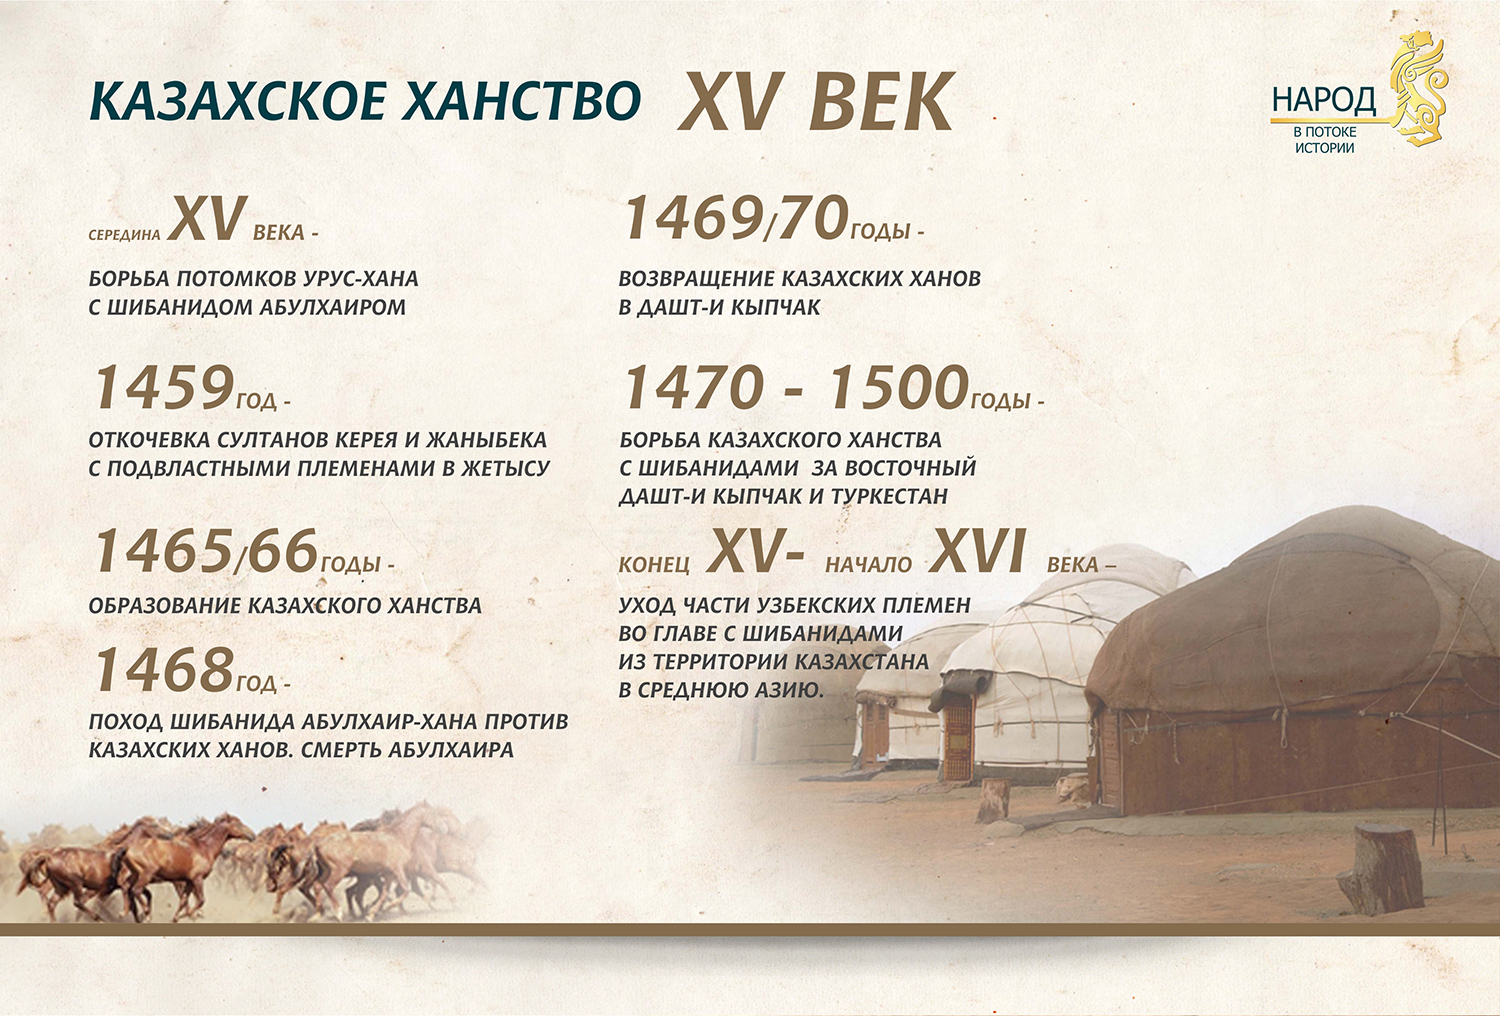 Даты 16 века истории. Казахское ханство. Год образования казахского ханства. Год основания казахского ханства. Основные занятие казахского ханства.